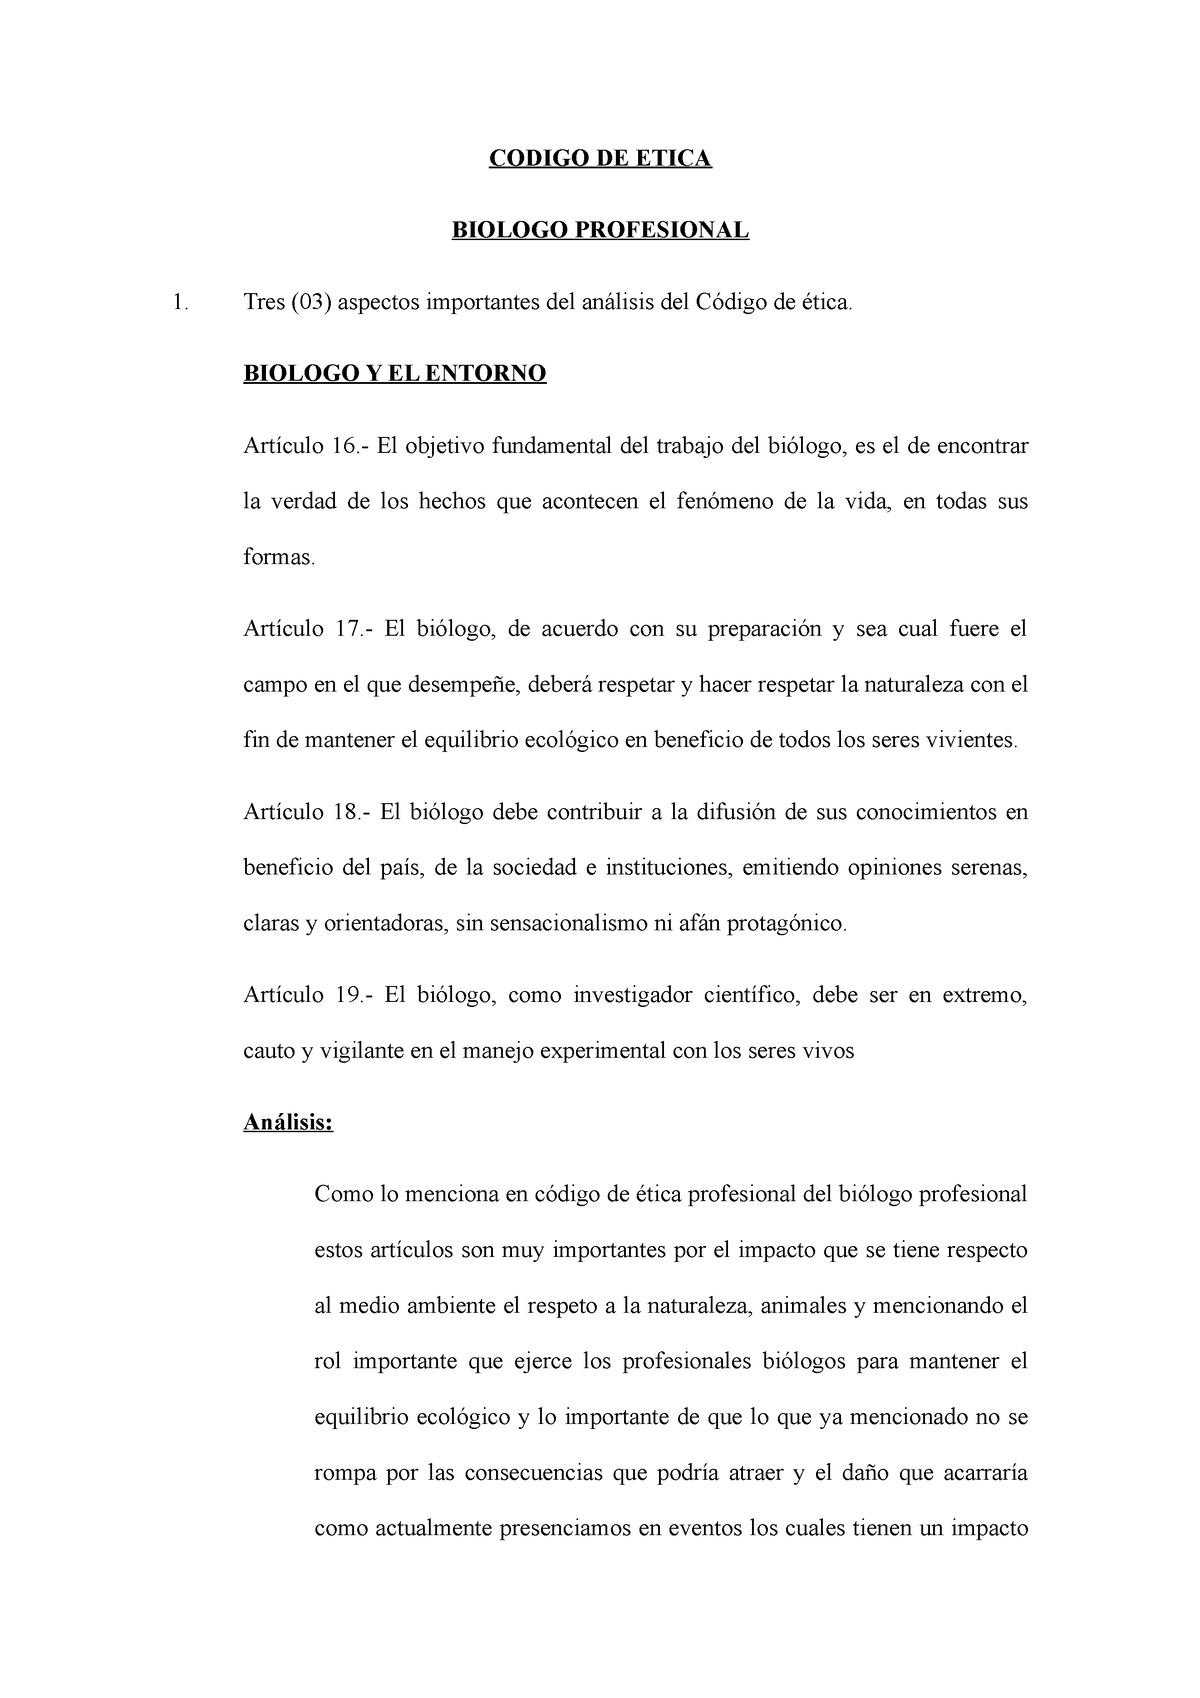 Codigo De Etica Resumenes Codigo De Etica Biologo Profesional Tres 03 Aspectos Importantes 2319